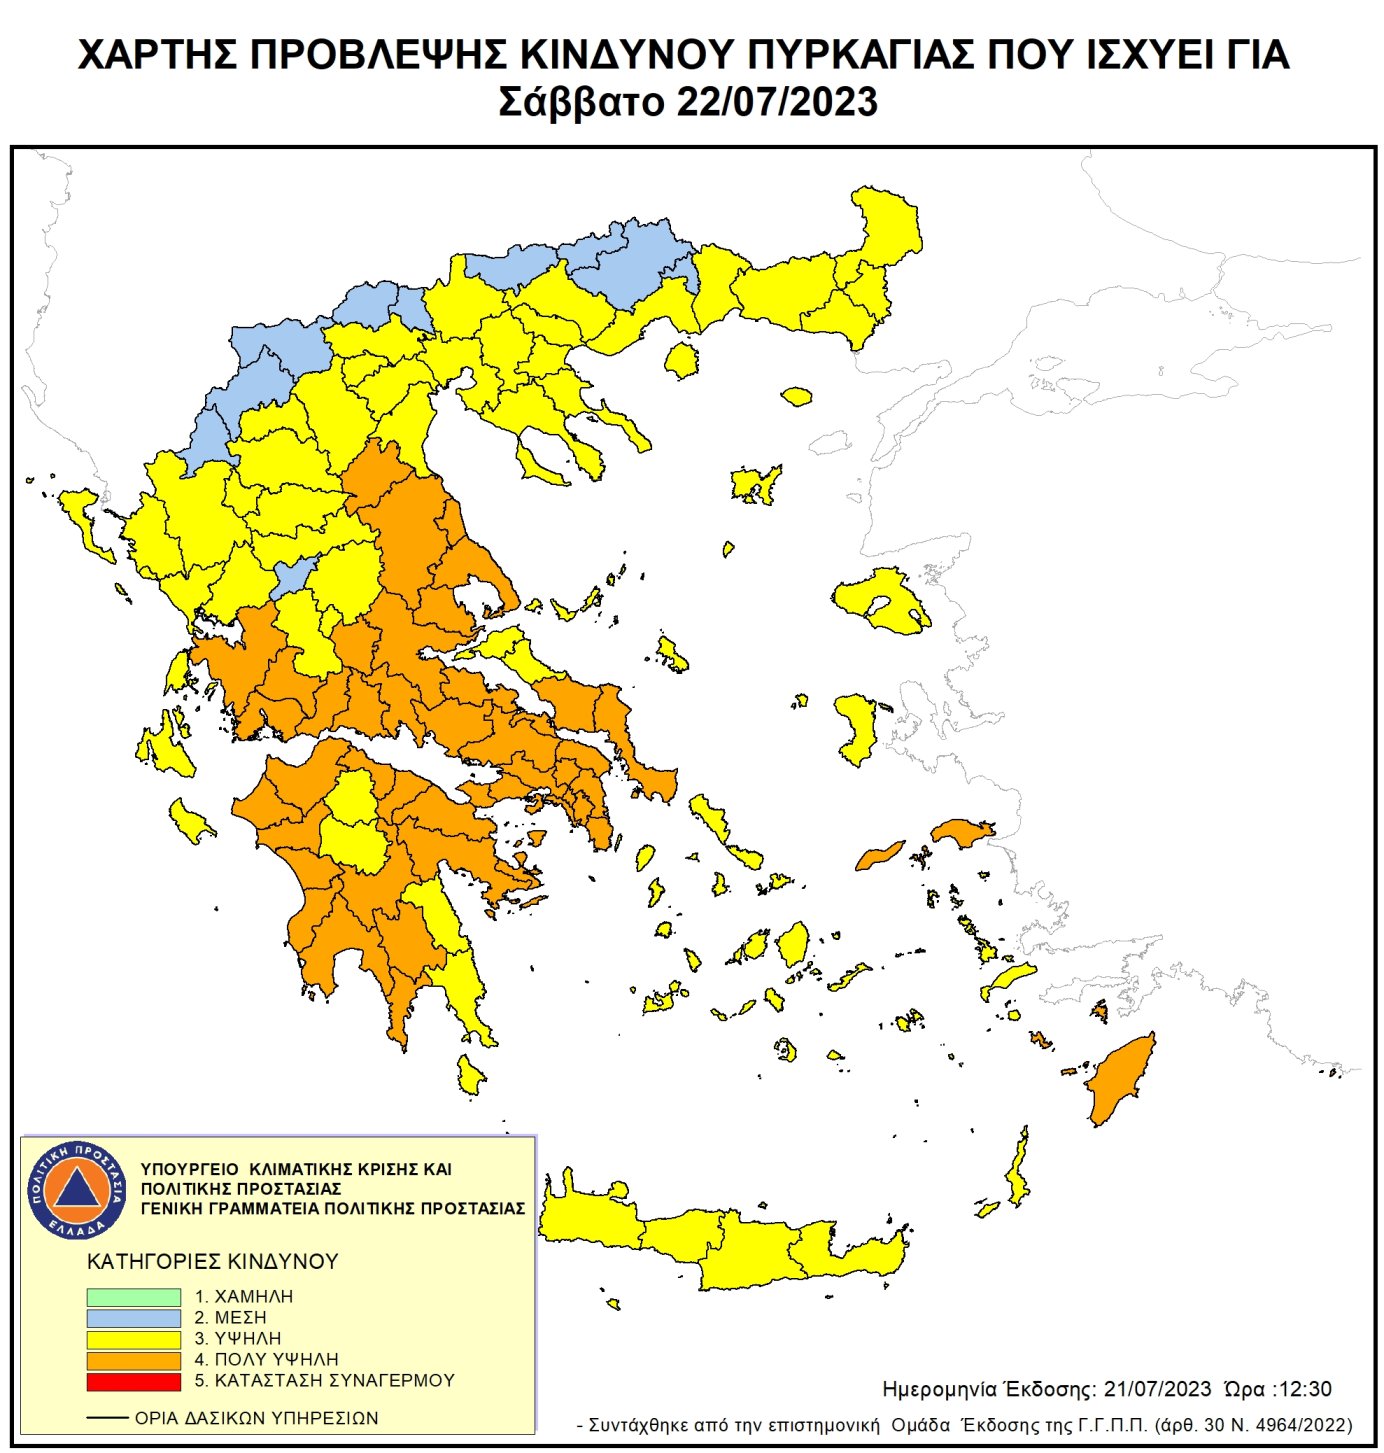 Ο χάρτης πρόβλεψης επικινδυνότητας πυρκαγιάς, όπως εκδόθηκε από την Πολιτική Προστασία